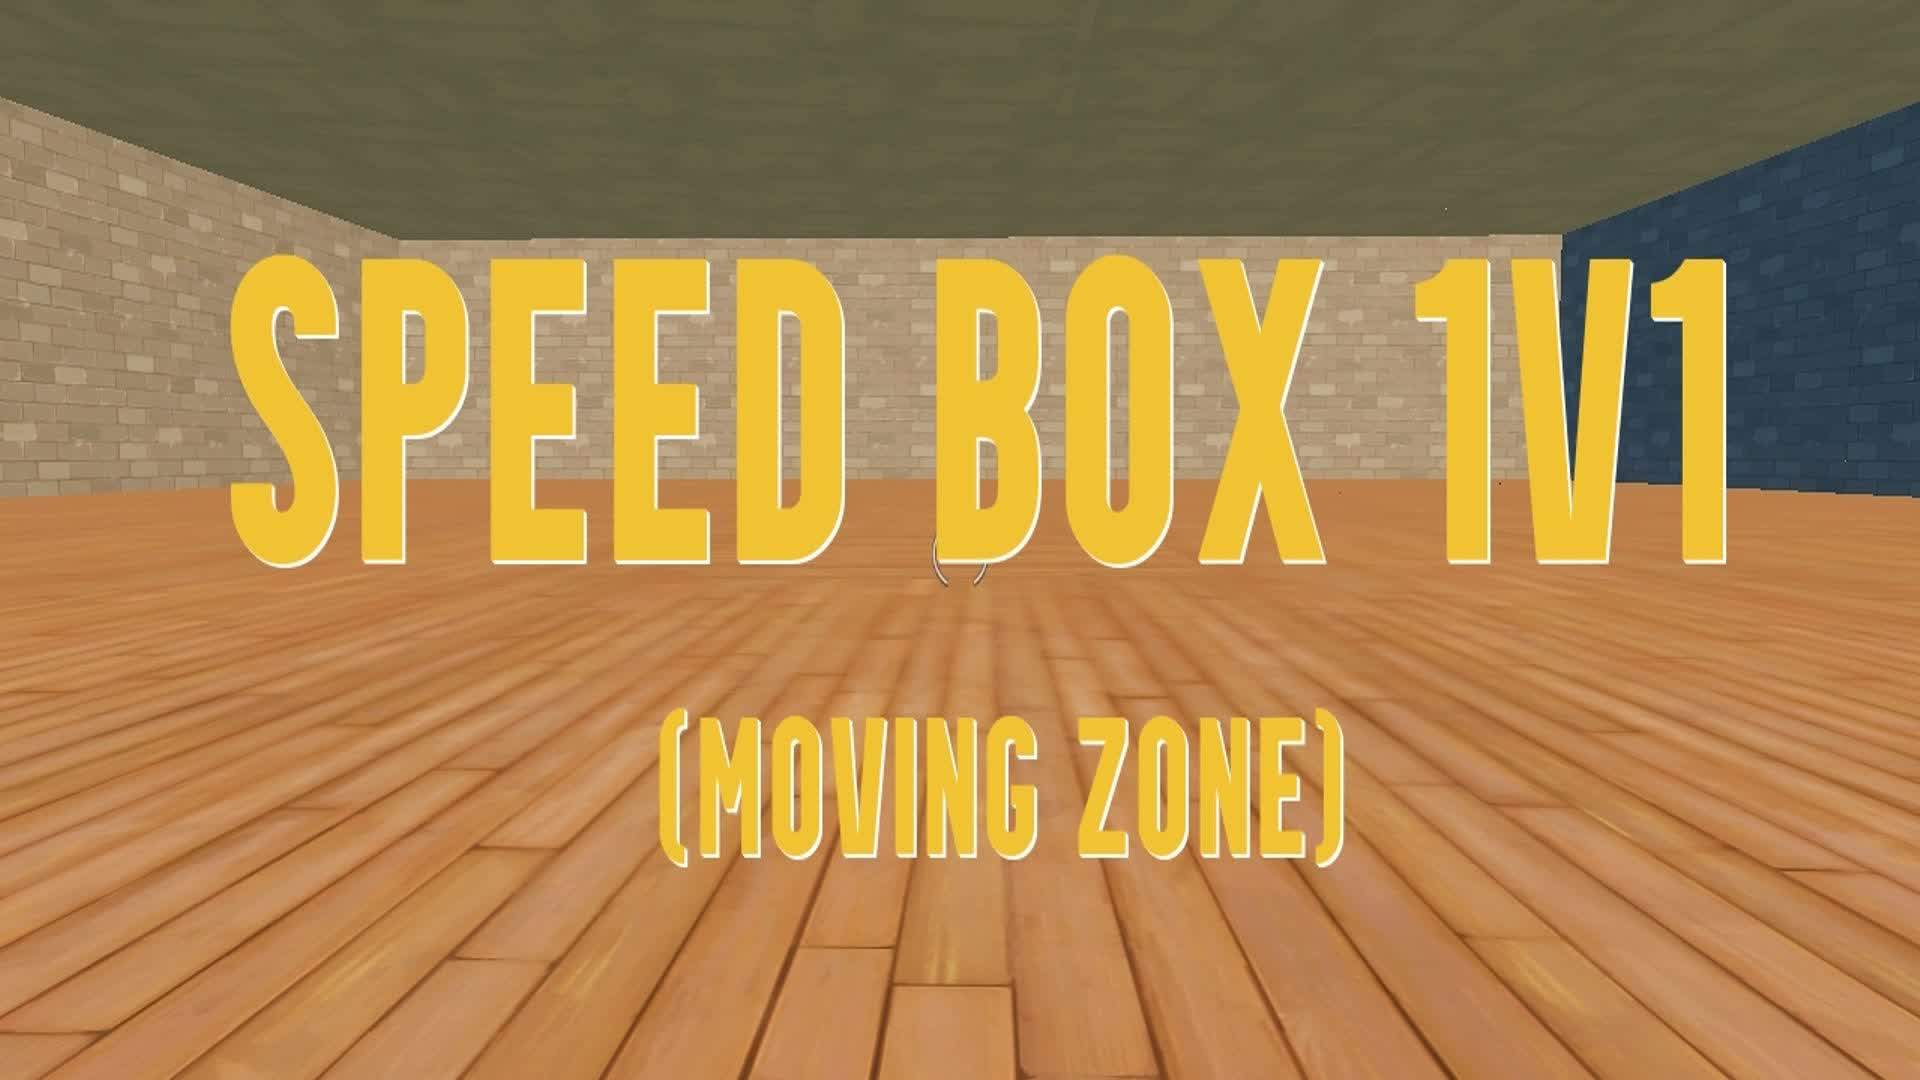 SPEED BOX 1V1 📦(MOVING ZONE)